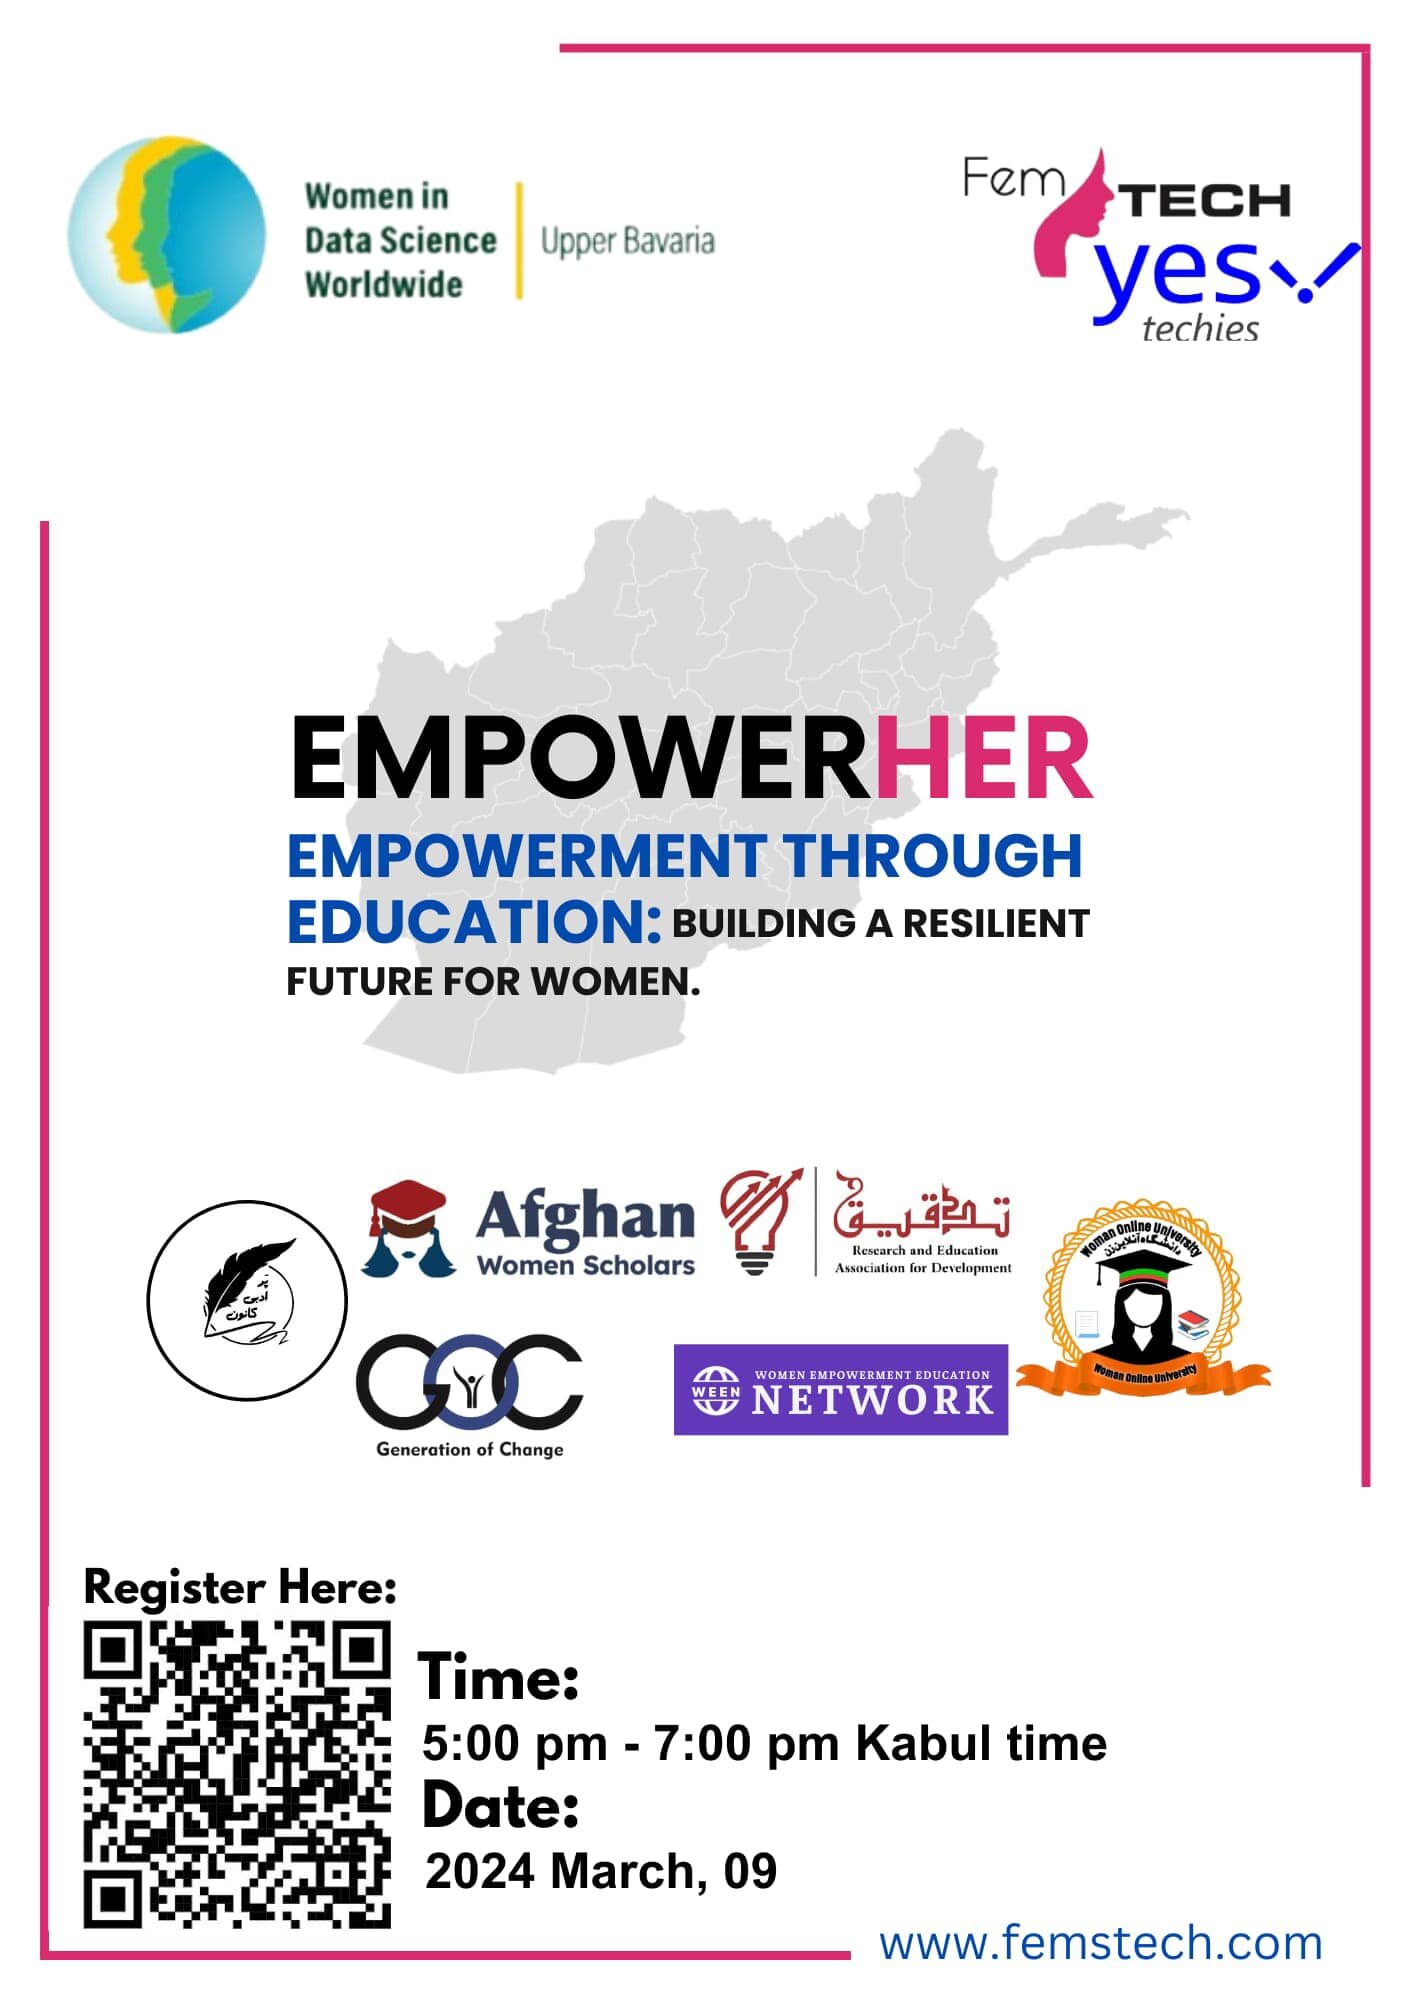 به کنفرانس علمی&quot;توانمندسازی بانوان&quot; بپیوندید! 📚✨

در افغانستان، جایی که دسترسی زنان به تحصیلات به دلیل تضاد، فرهنگ&zwnj;های محلی، و تبعیض جنسی محدود می&zwnj;شود، ما برای ایجاد تغییر اقدام می&zwnj;کنیم! کنفرانس علمی &quot;توانمندسازی توسط آ